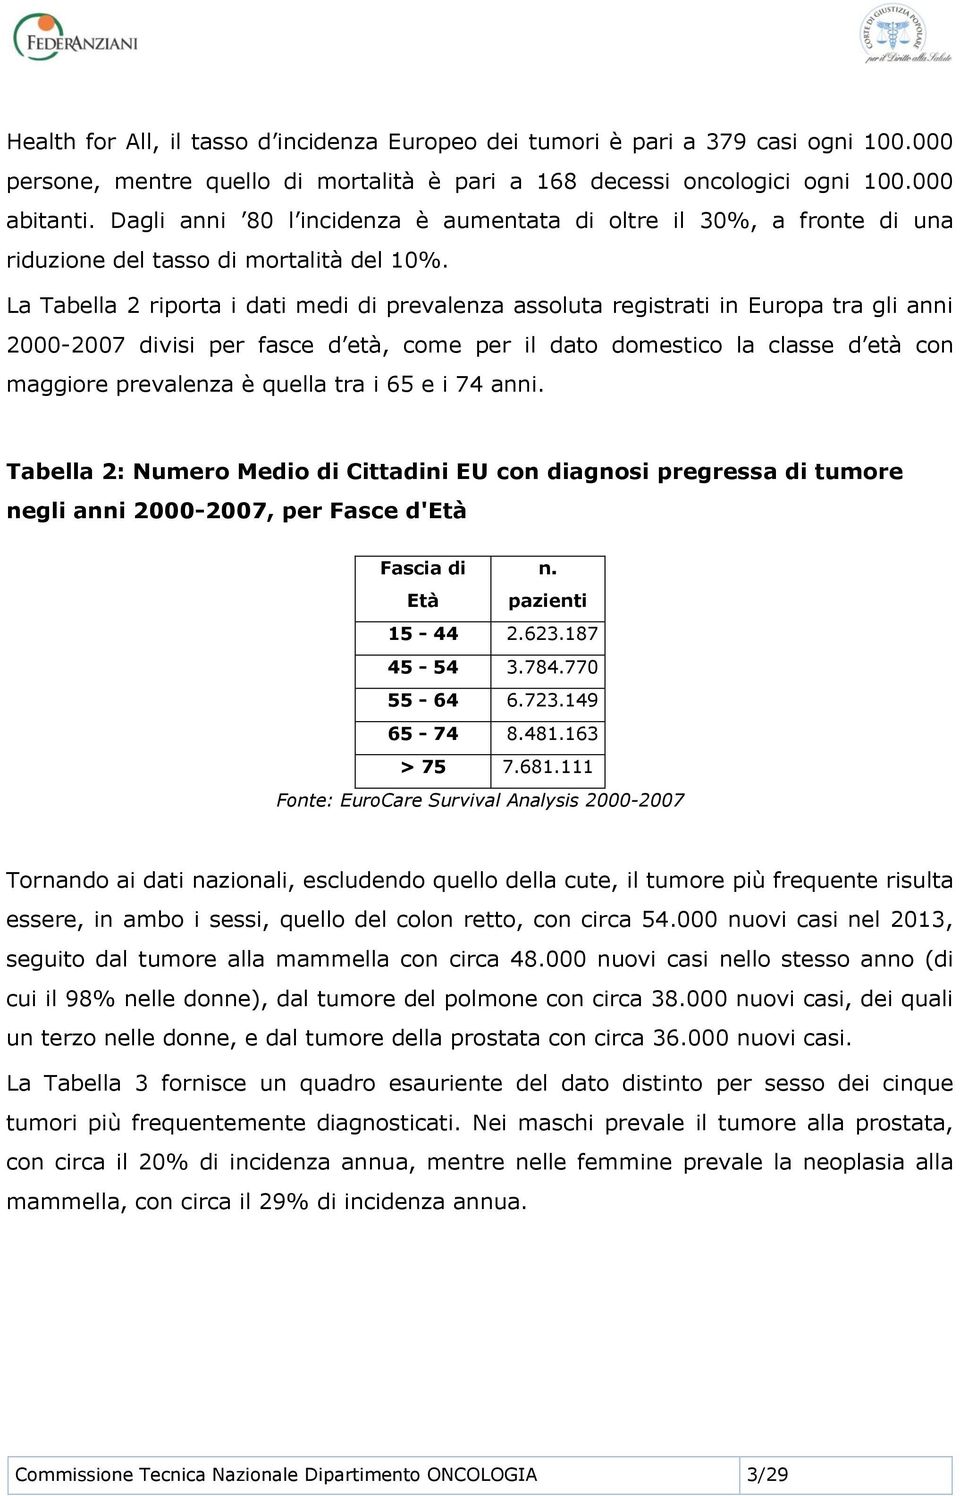 La Tabella 2 riporta i dati medi di prevalenza assoluta registrati in Europa tra gli anni 2000-2007 divisi per fasce d età, come per il dato domestico la classe d età con maggiore prevalenza è quella